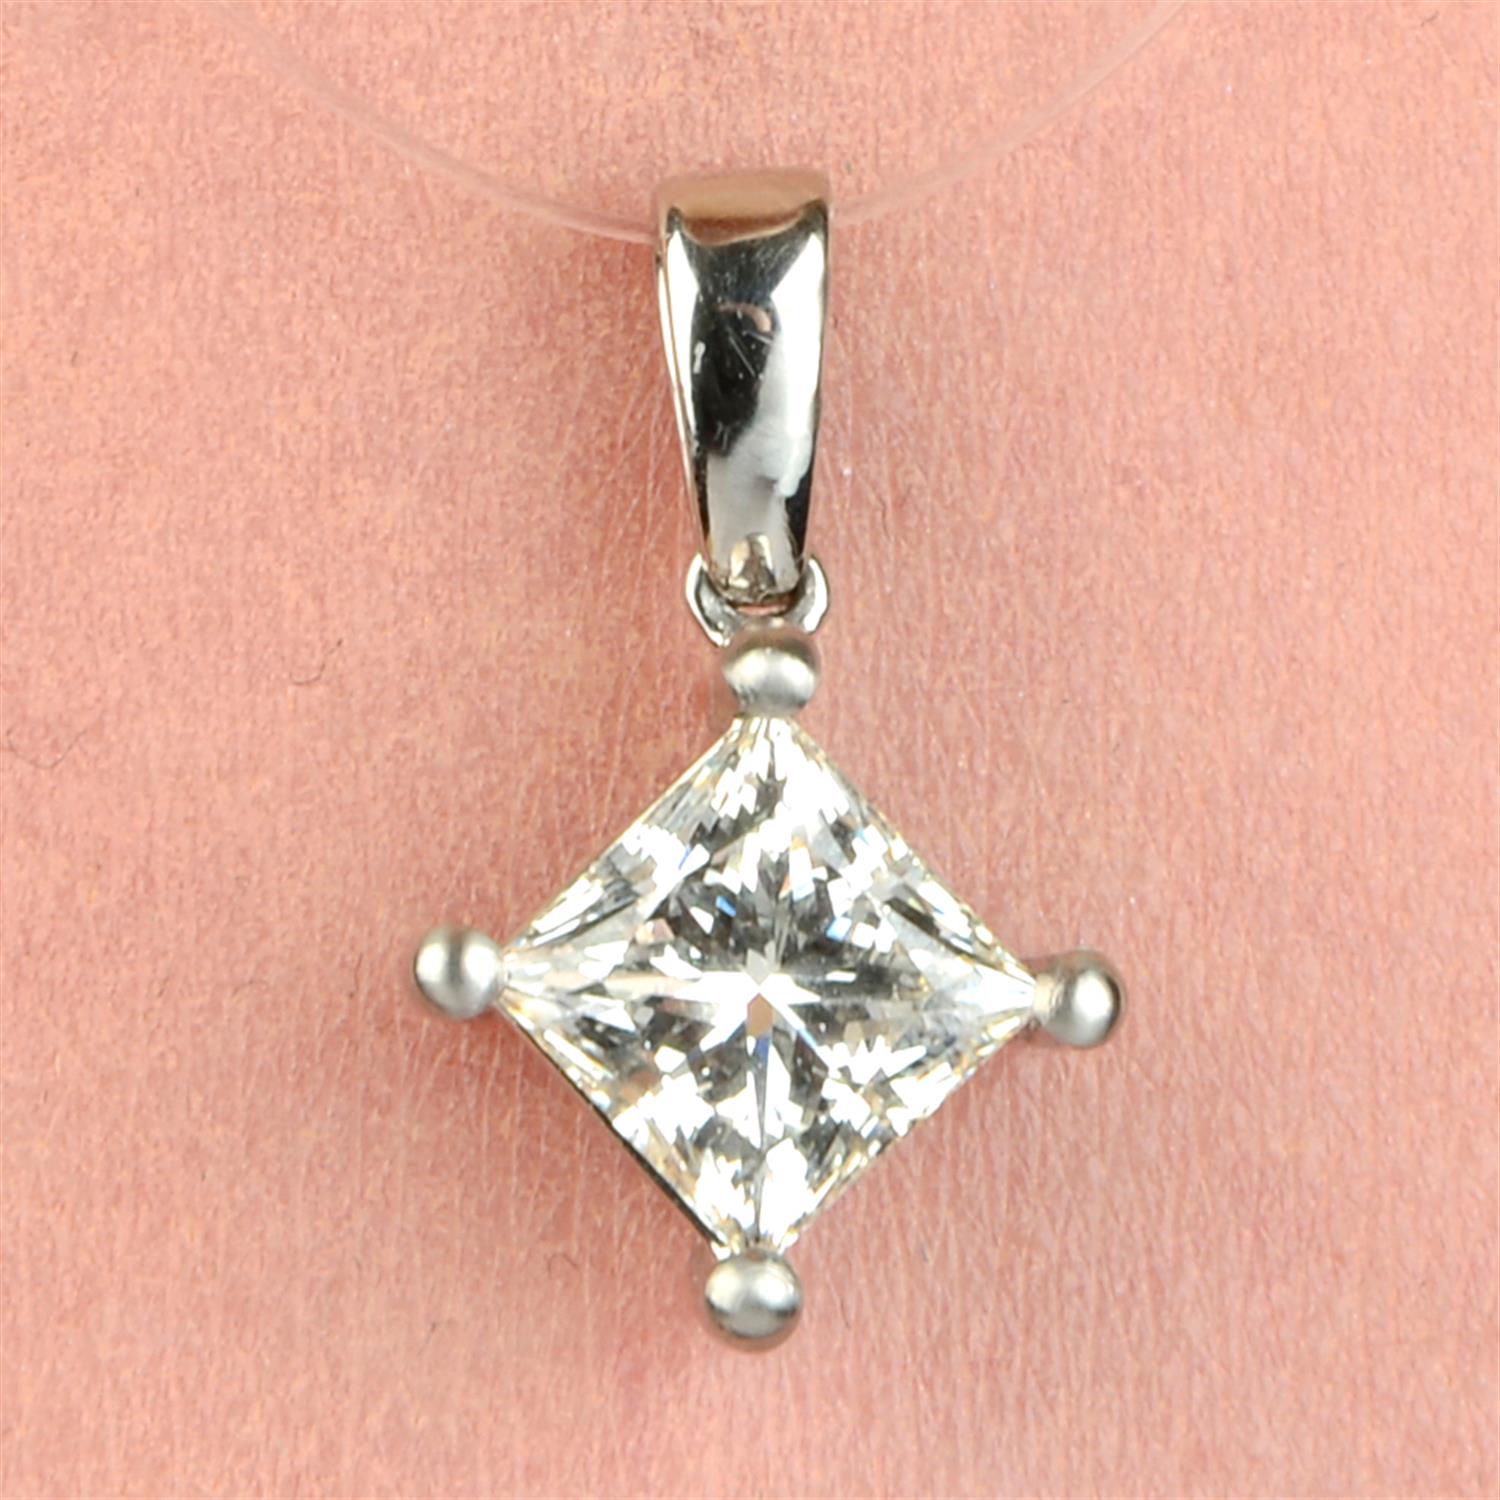 Square-shape diamond pendant